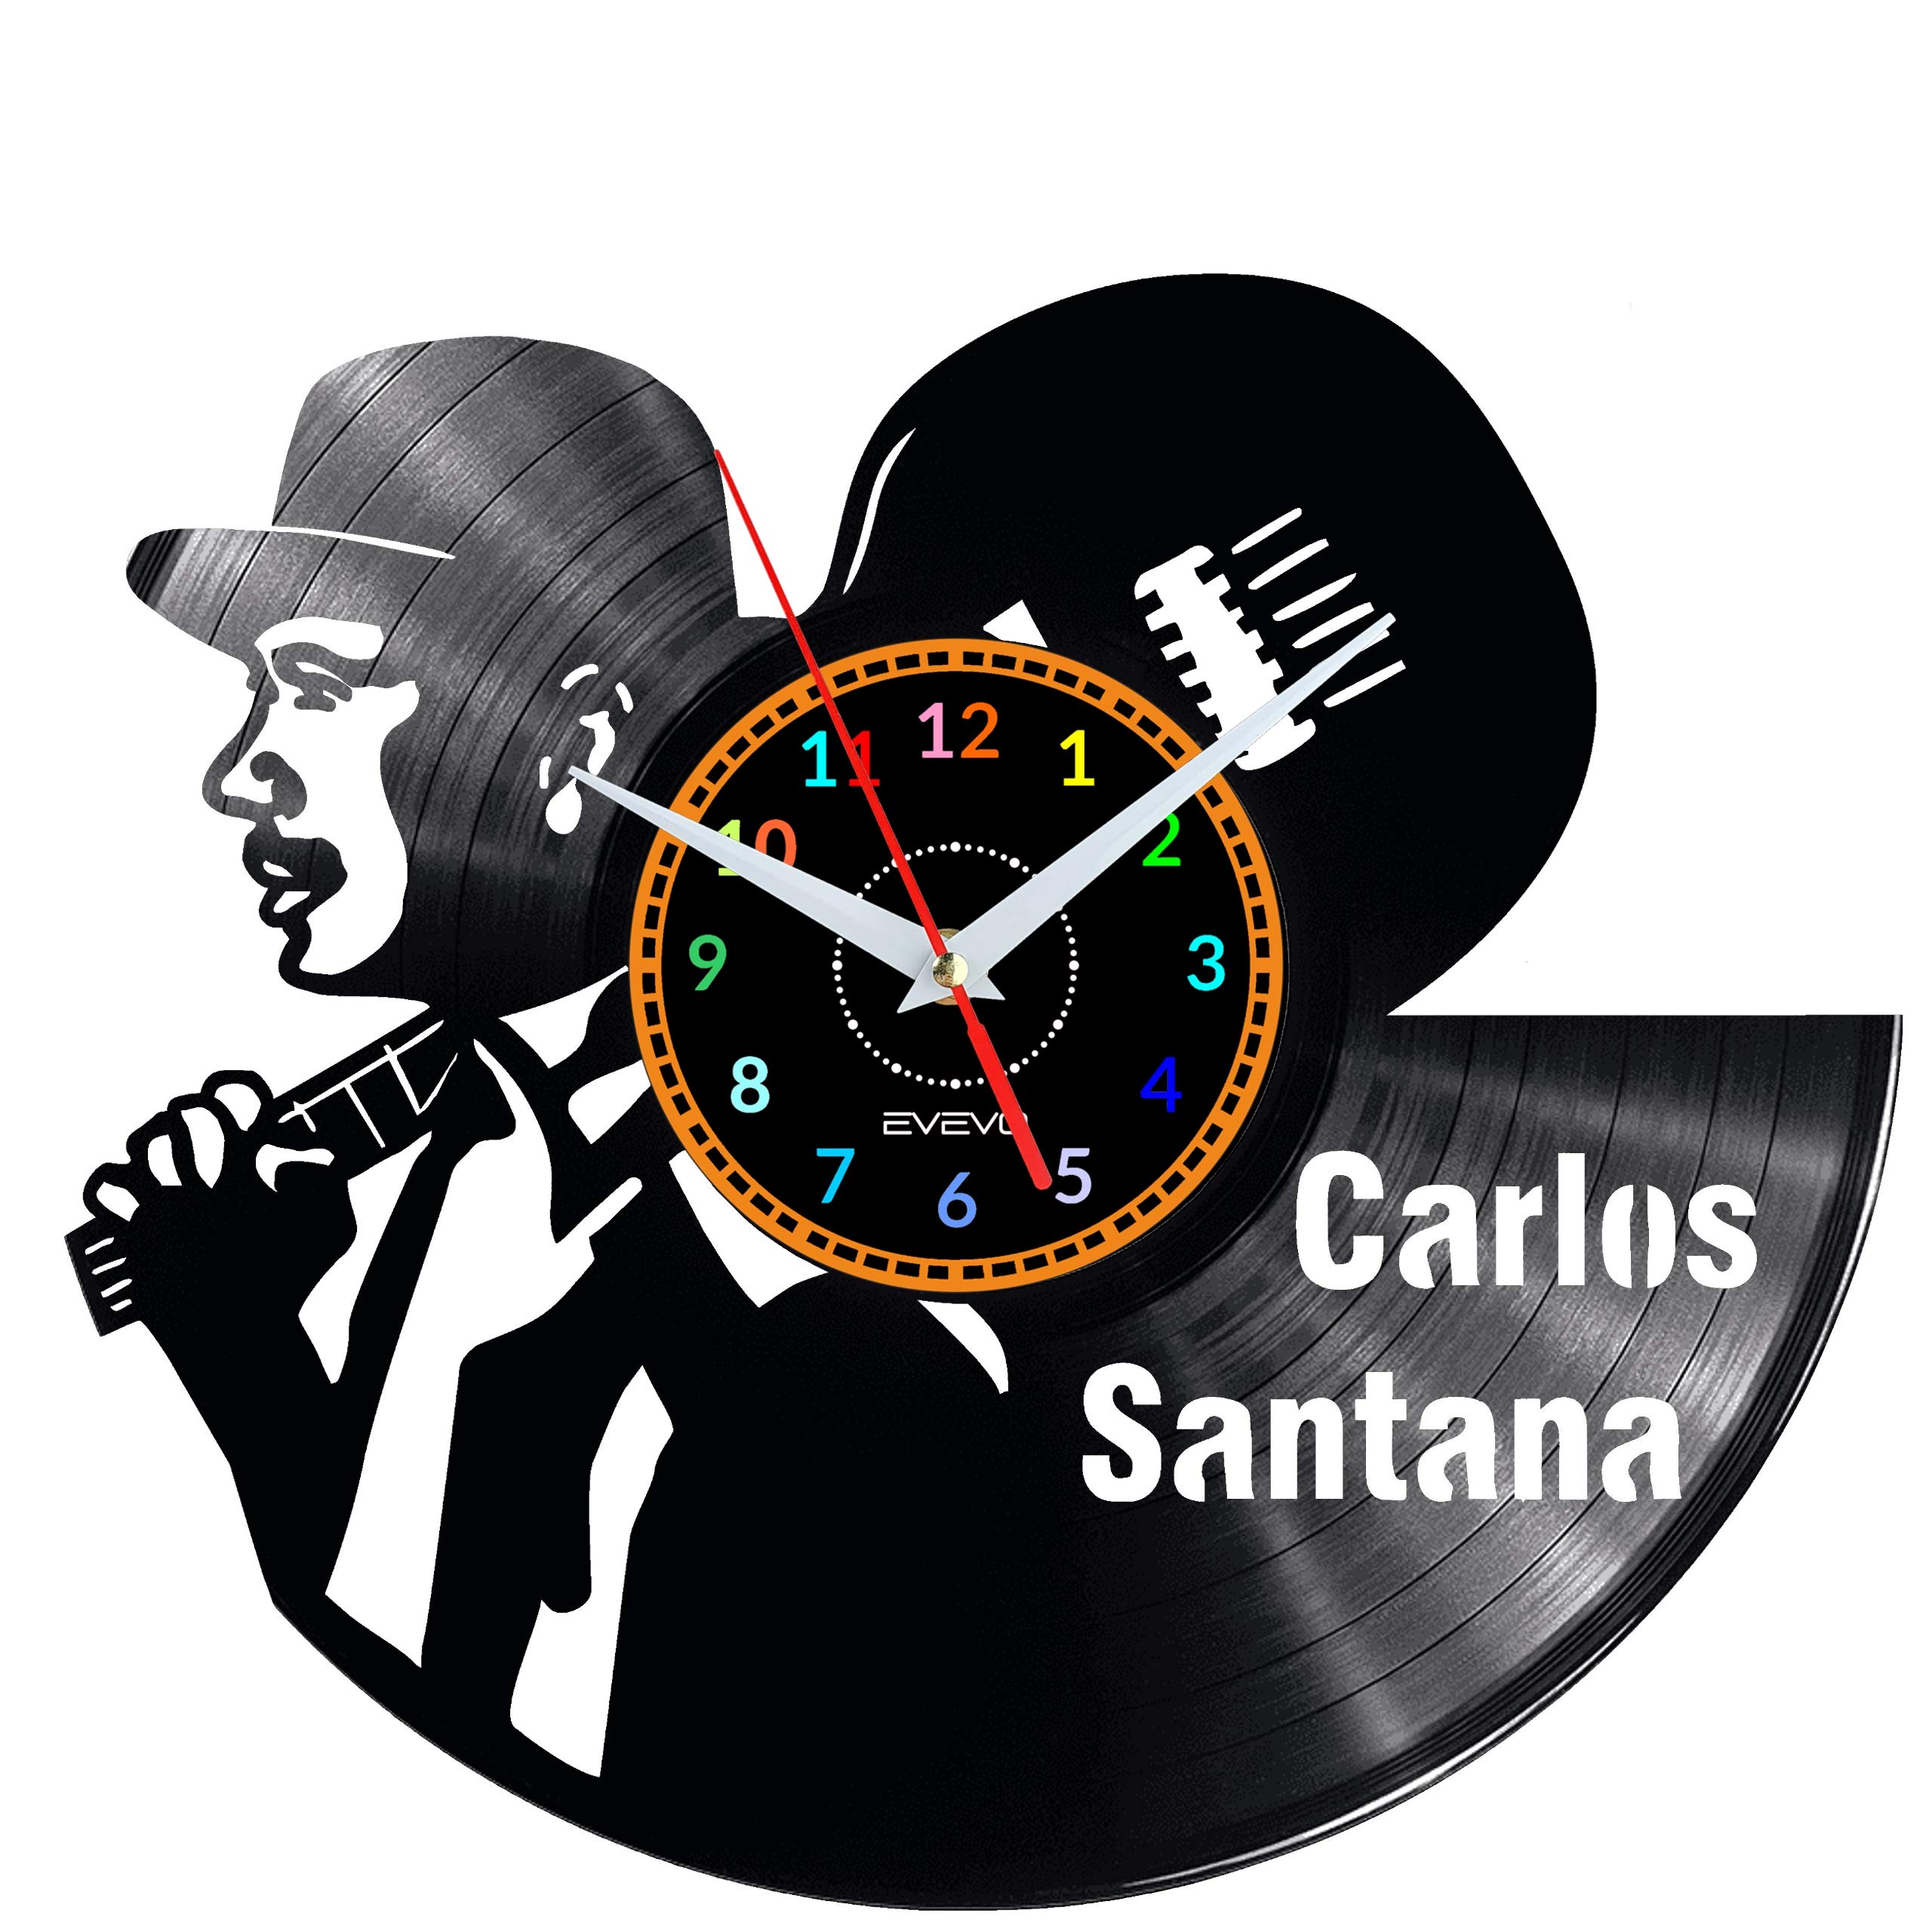 EVEVO Carlos Santana Wanduhr Vinyl Schallplatte Retro-Uhr groß Uhren Style Raum Home Dekorationen Tolles Geschenk Wanduhr Carlos Santana